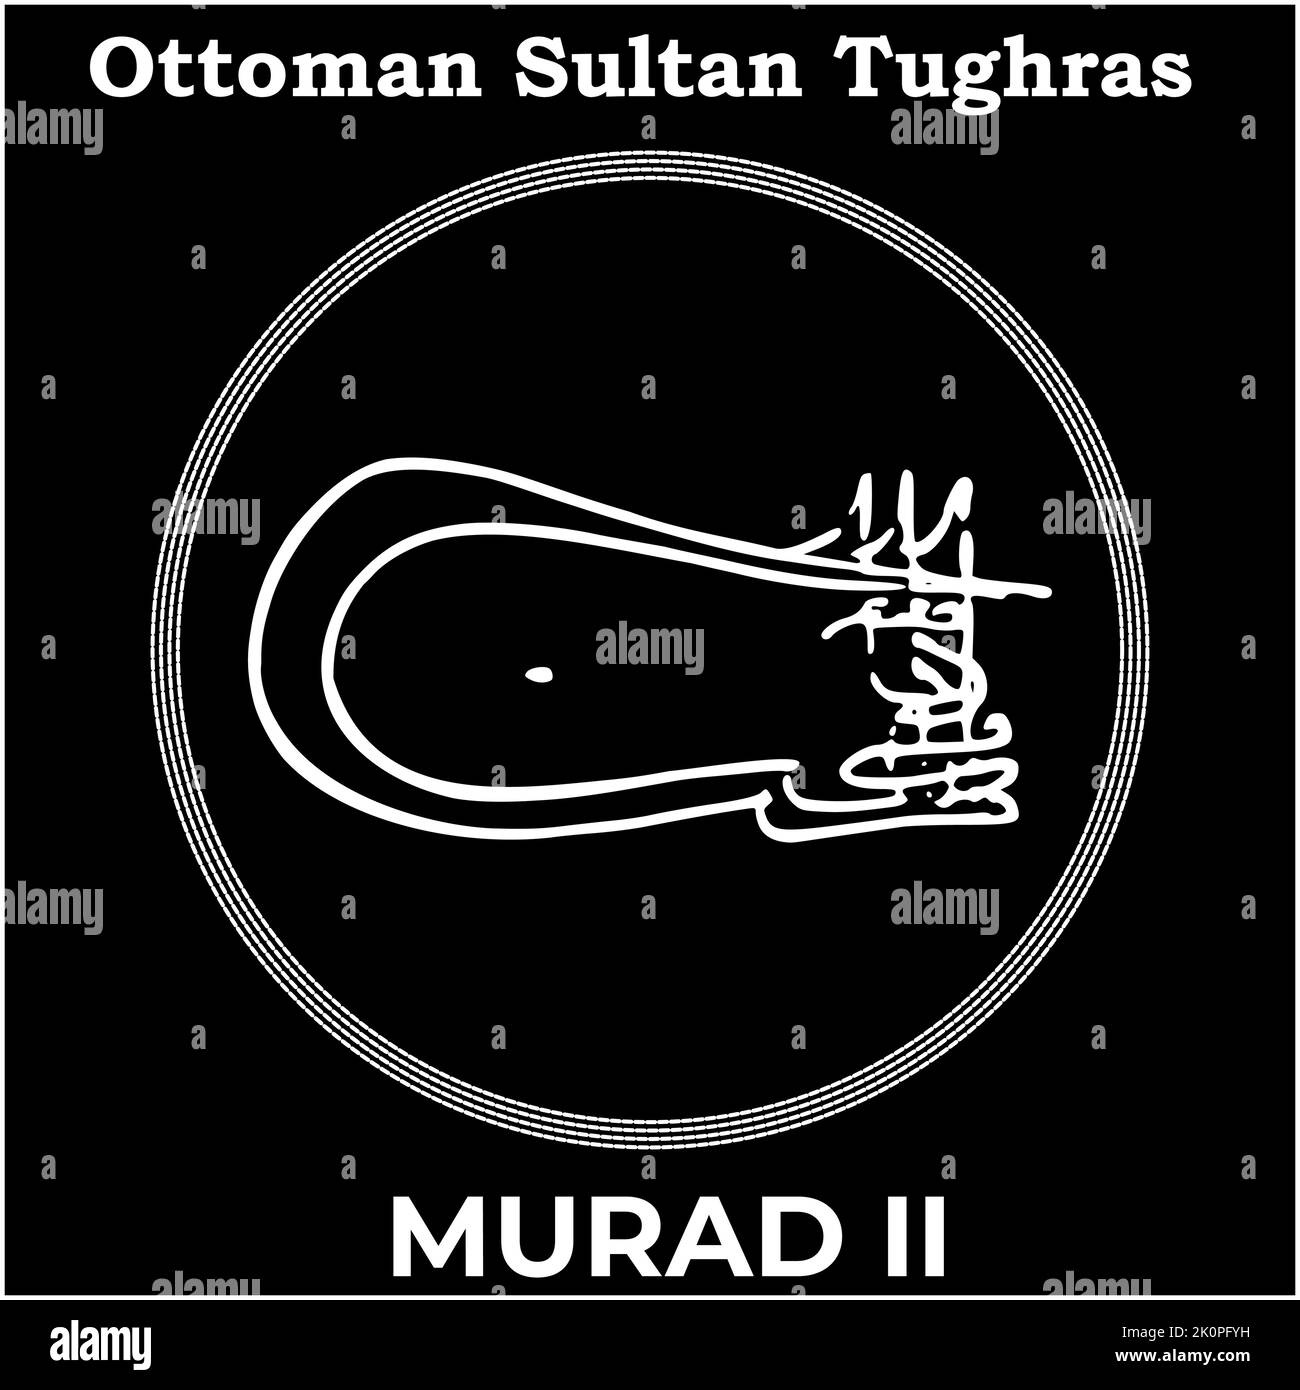 Vektorbild mit Tughra-Signatur des osmanischen Sechsten Sultans Murad II, Tughra von Murad II mit schwarzem Hintergrund. Stock Vektor